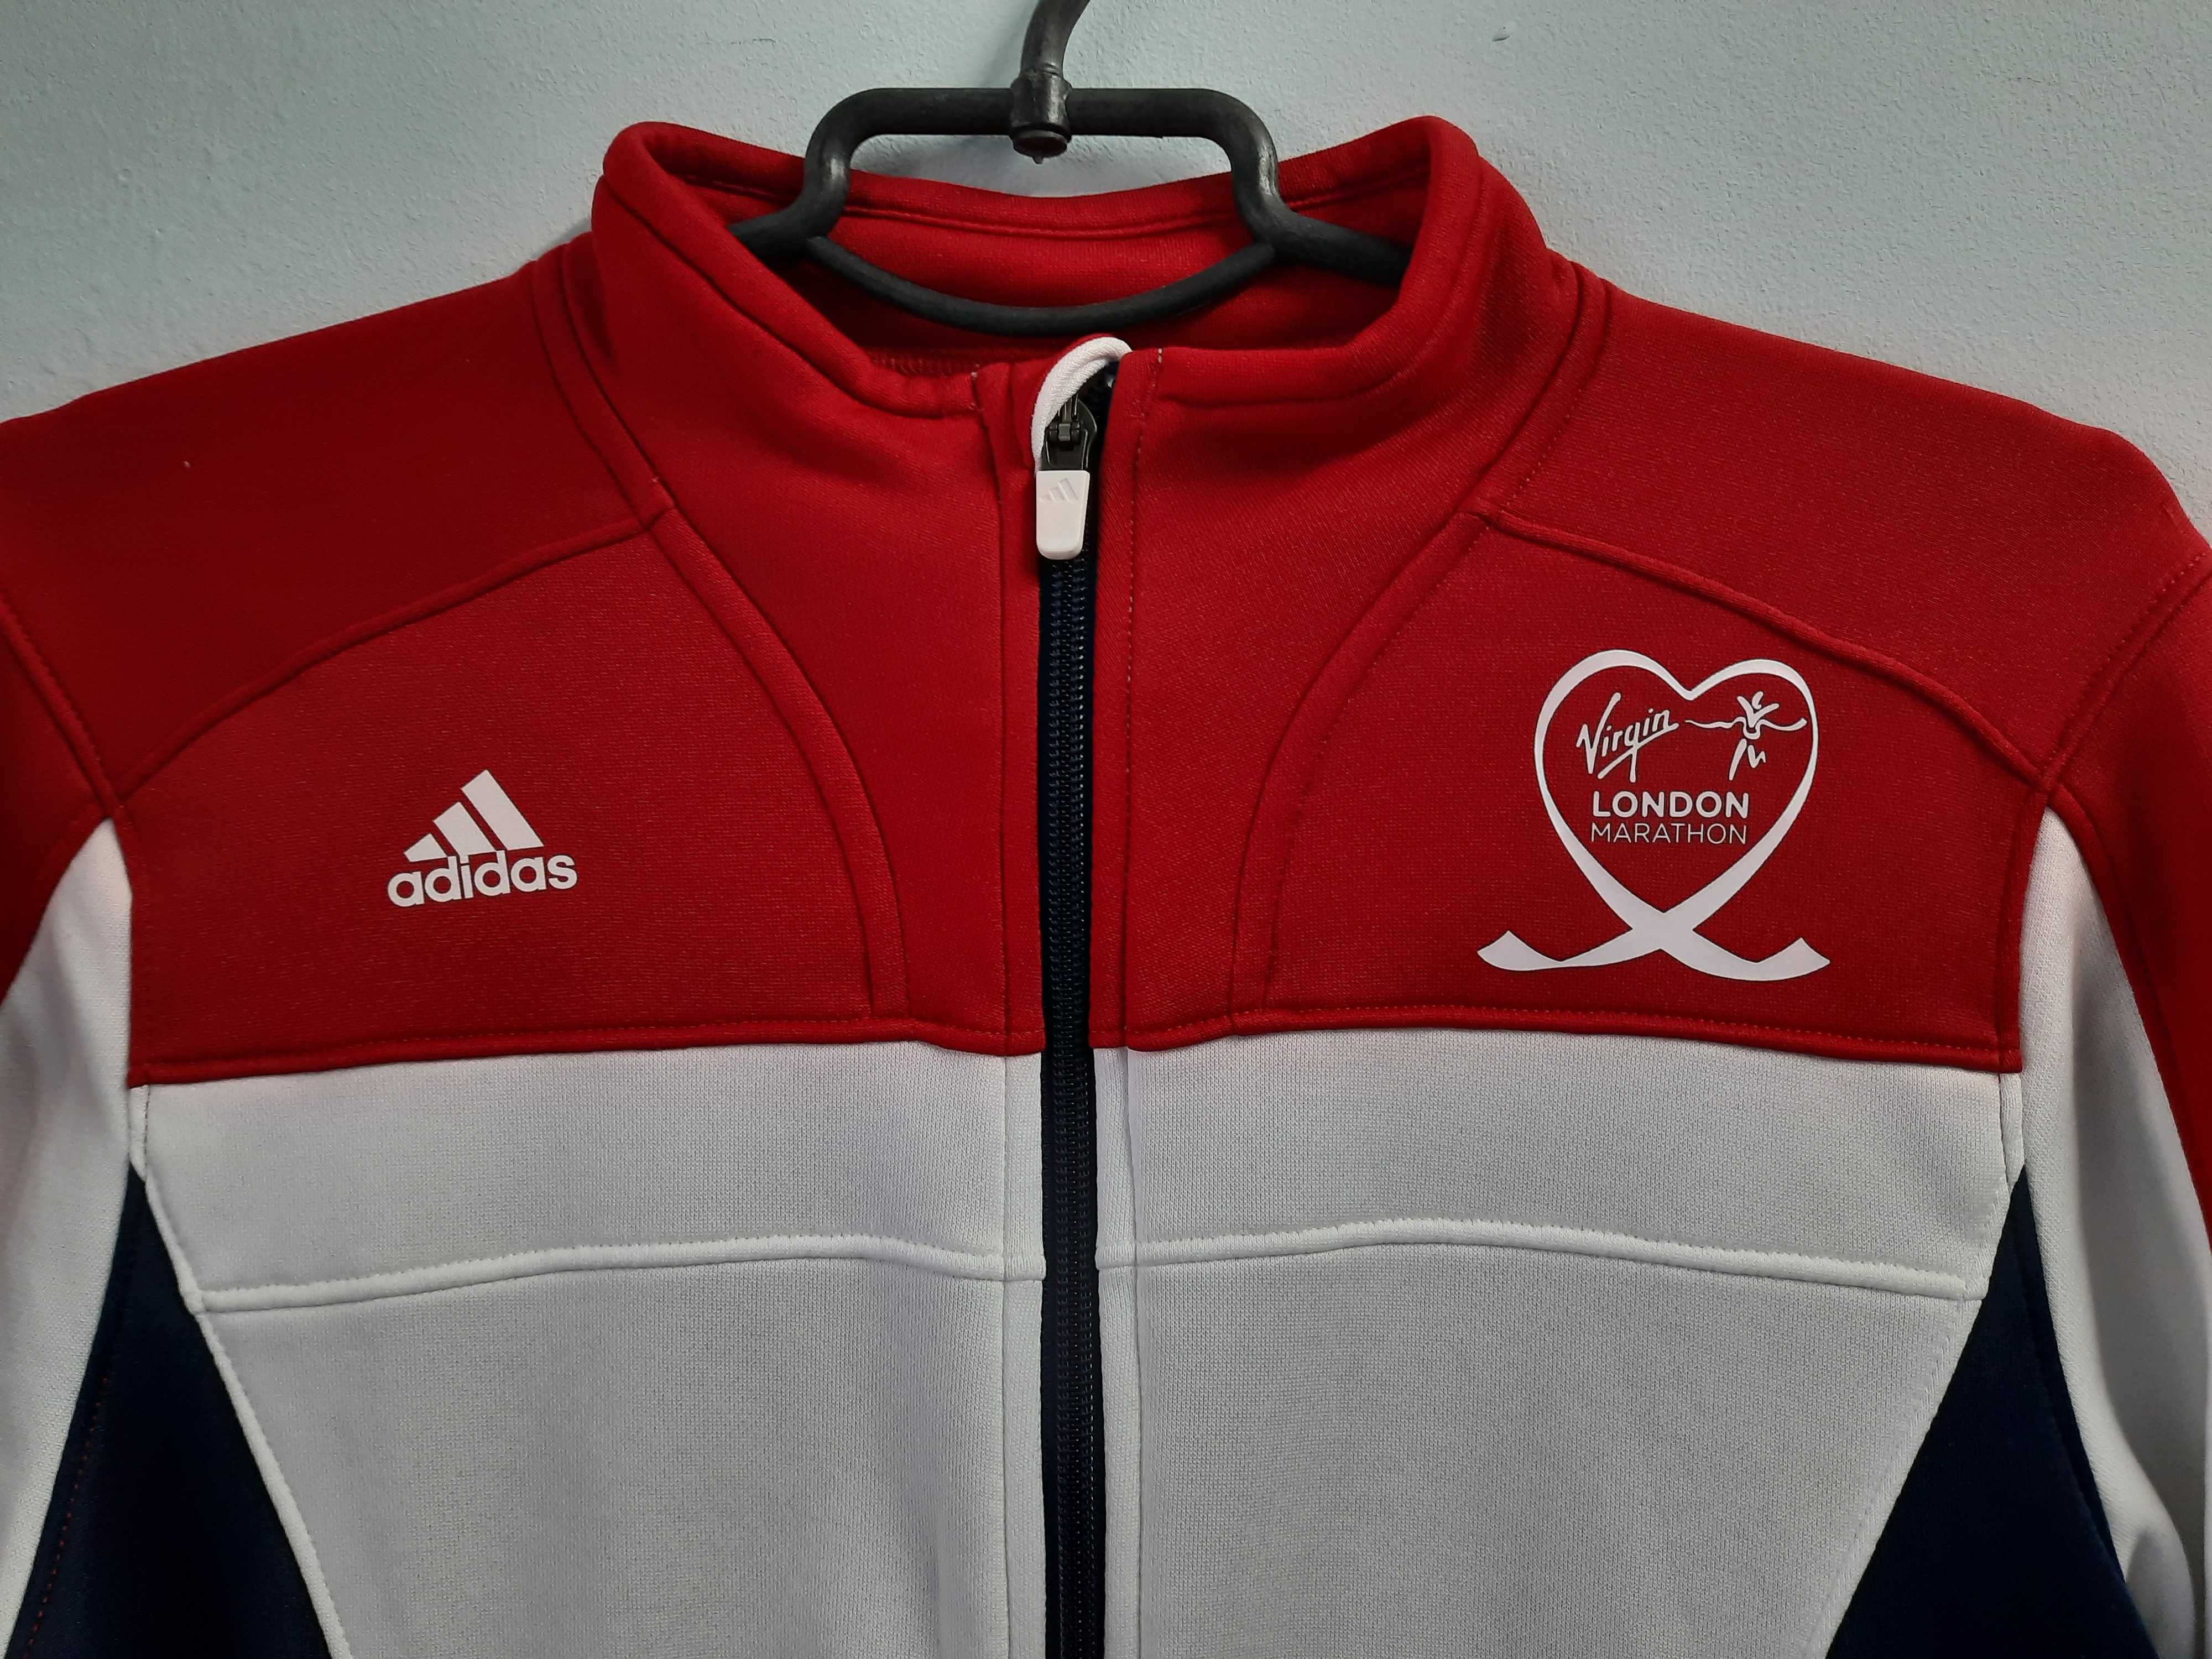 Женская олимпийка Adidas Virgin London Marathon 14(наш 48)